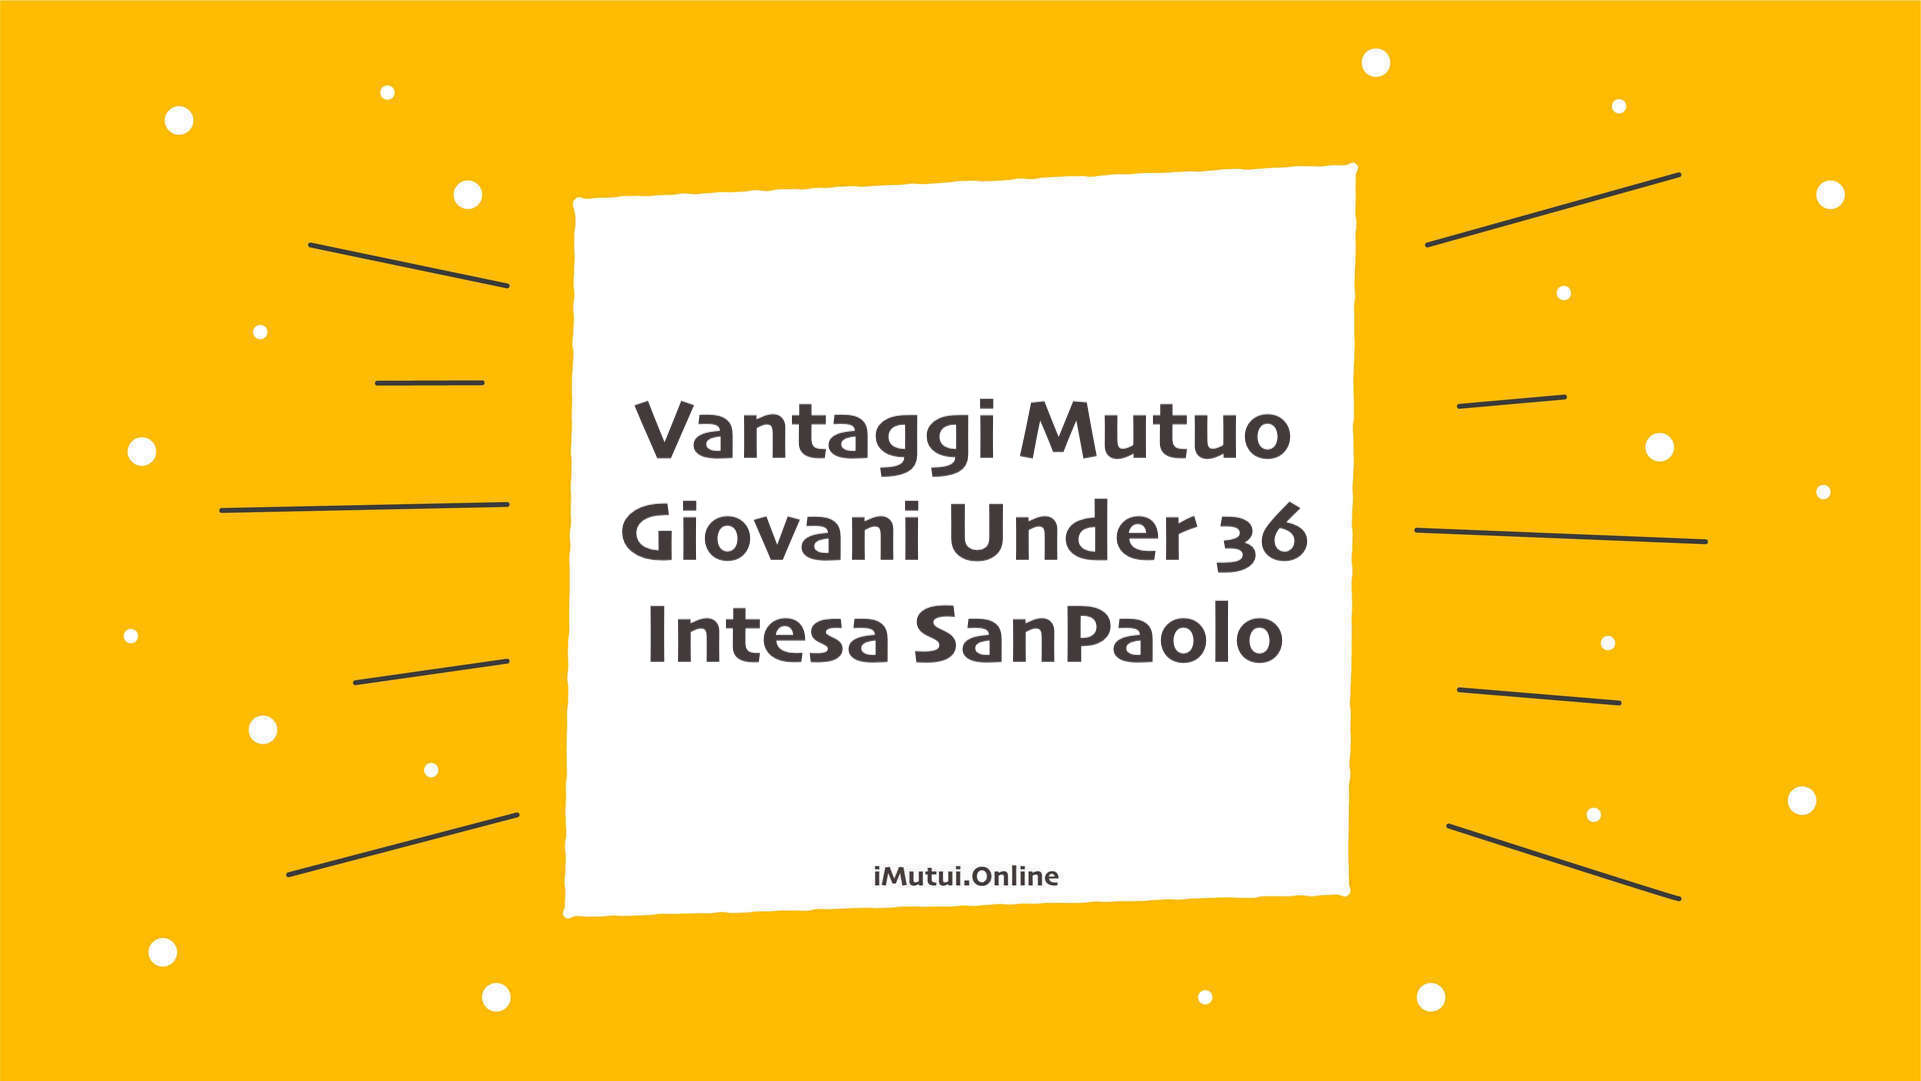 Vantaggi di Mutuo Giovani Under 36 Intesa SanPaolo